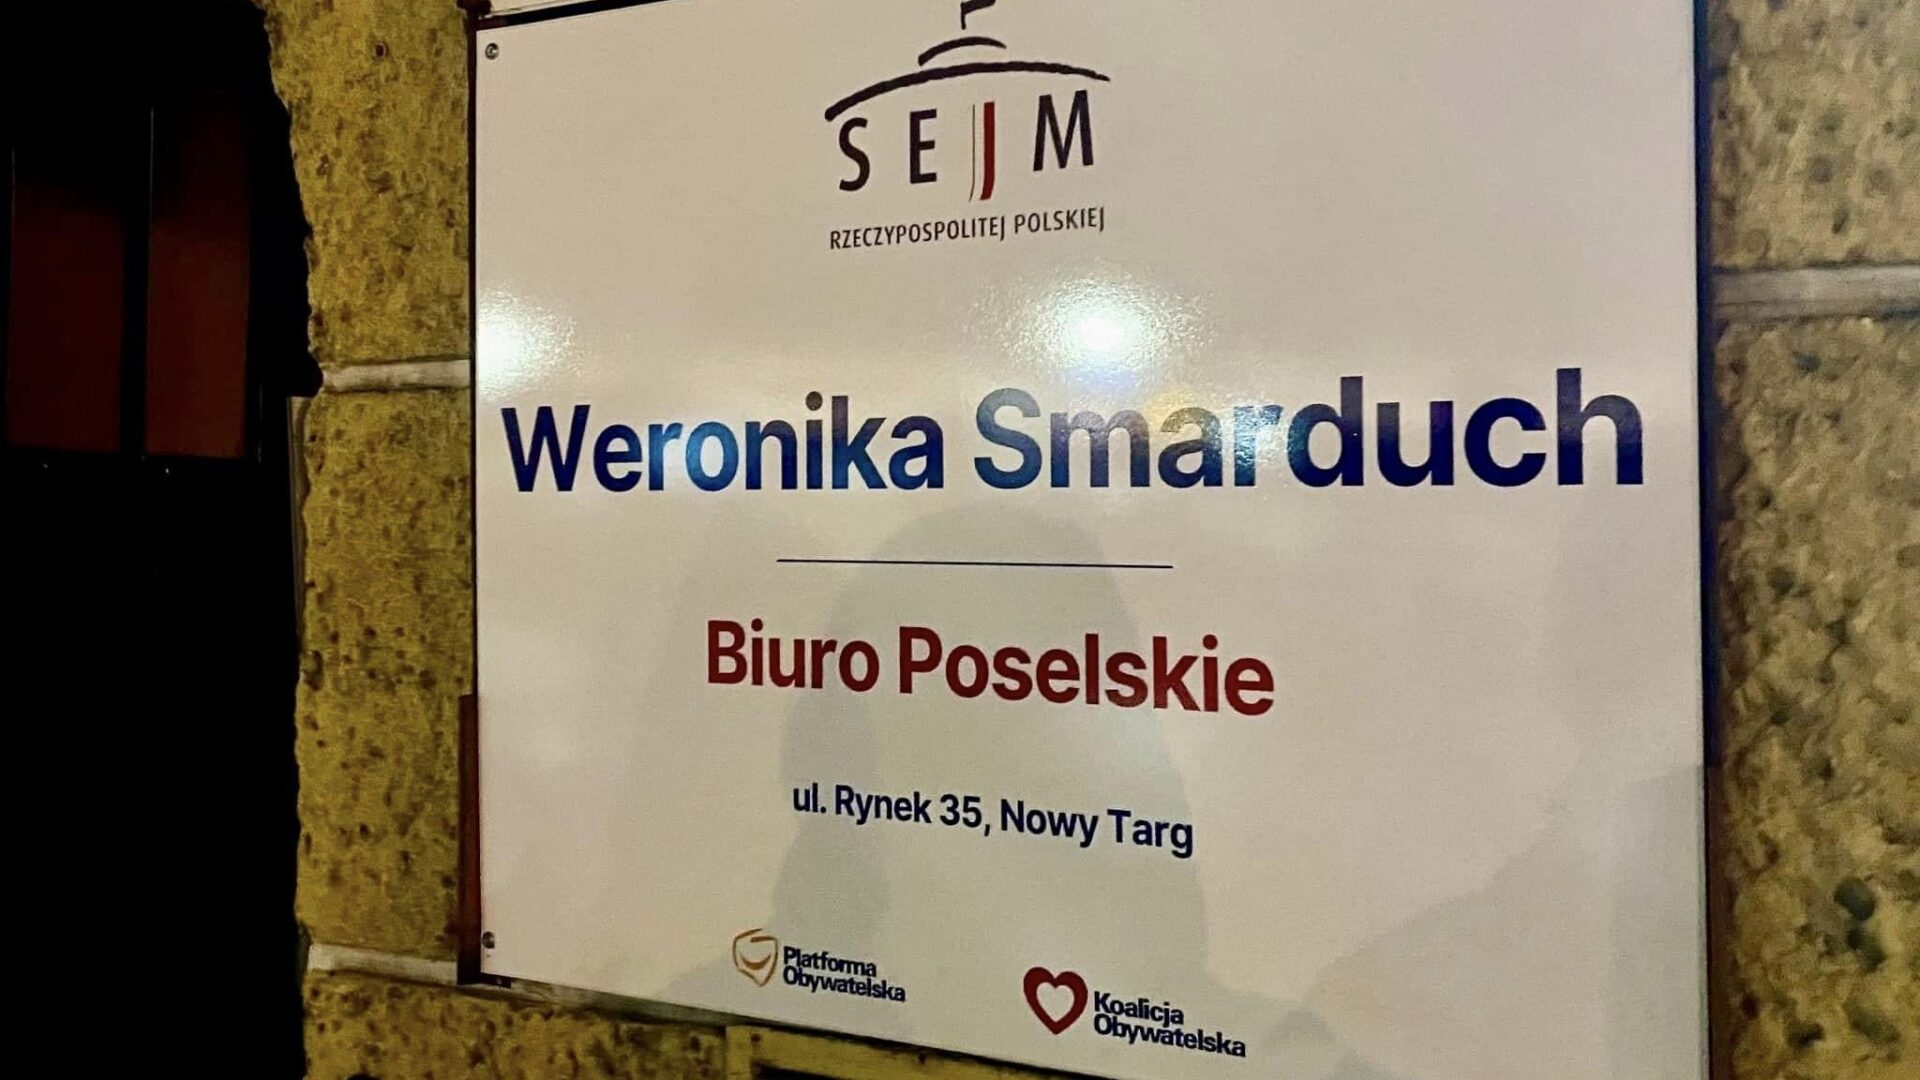 Biuro poselskie Weroniki Smarduch oficjalnie otwarte